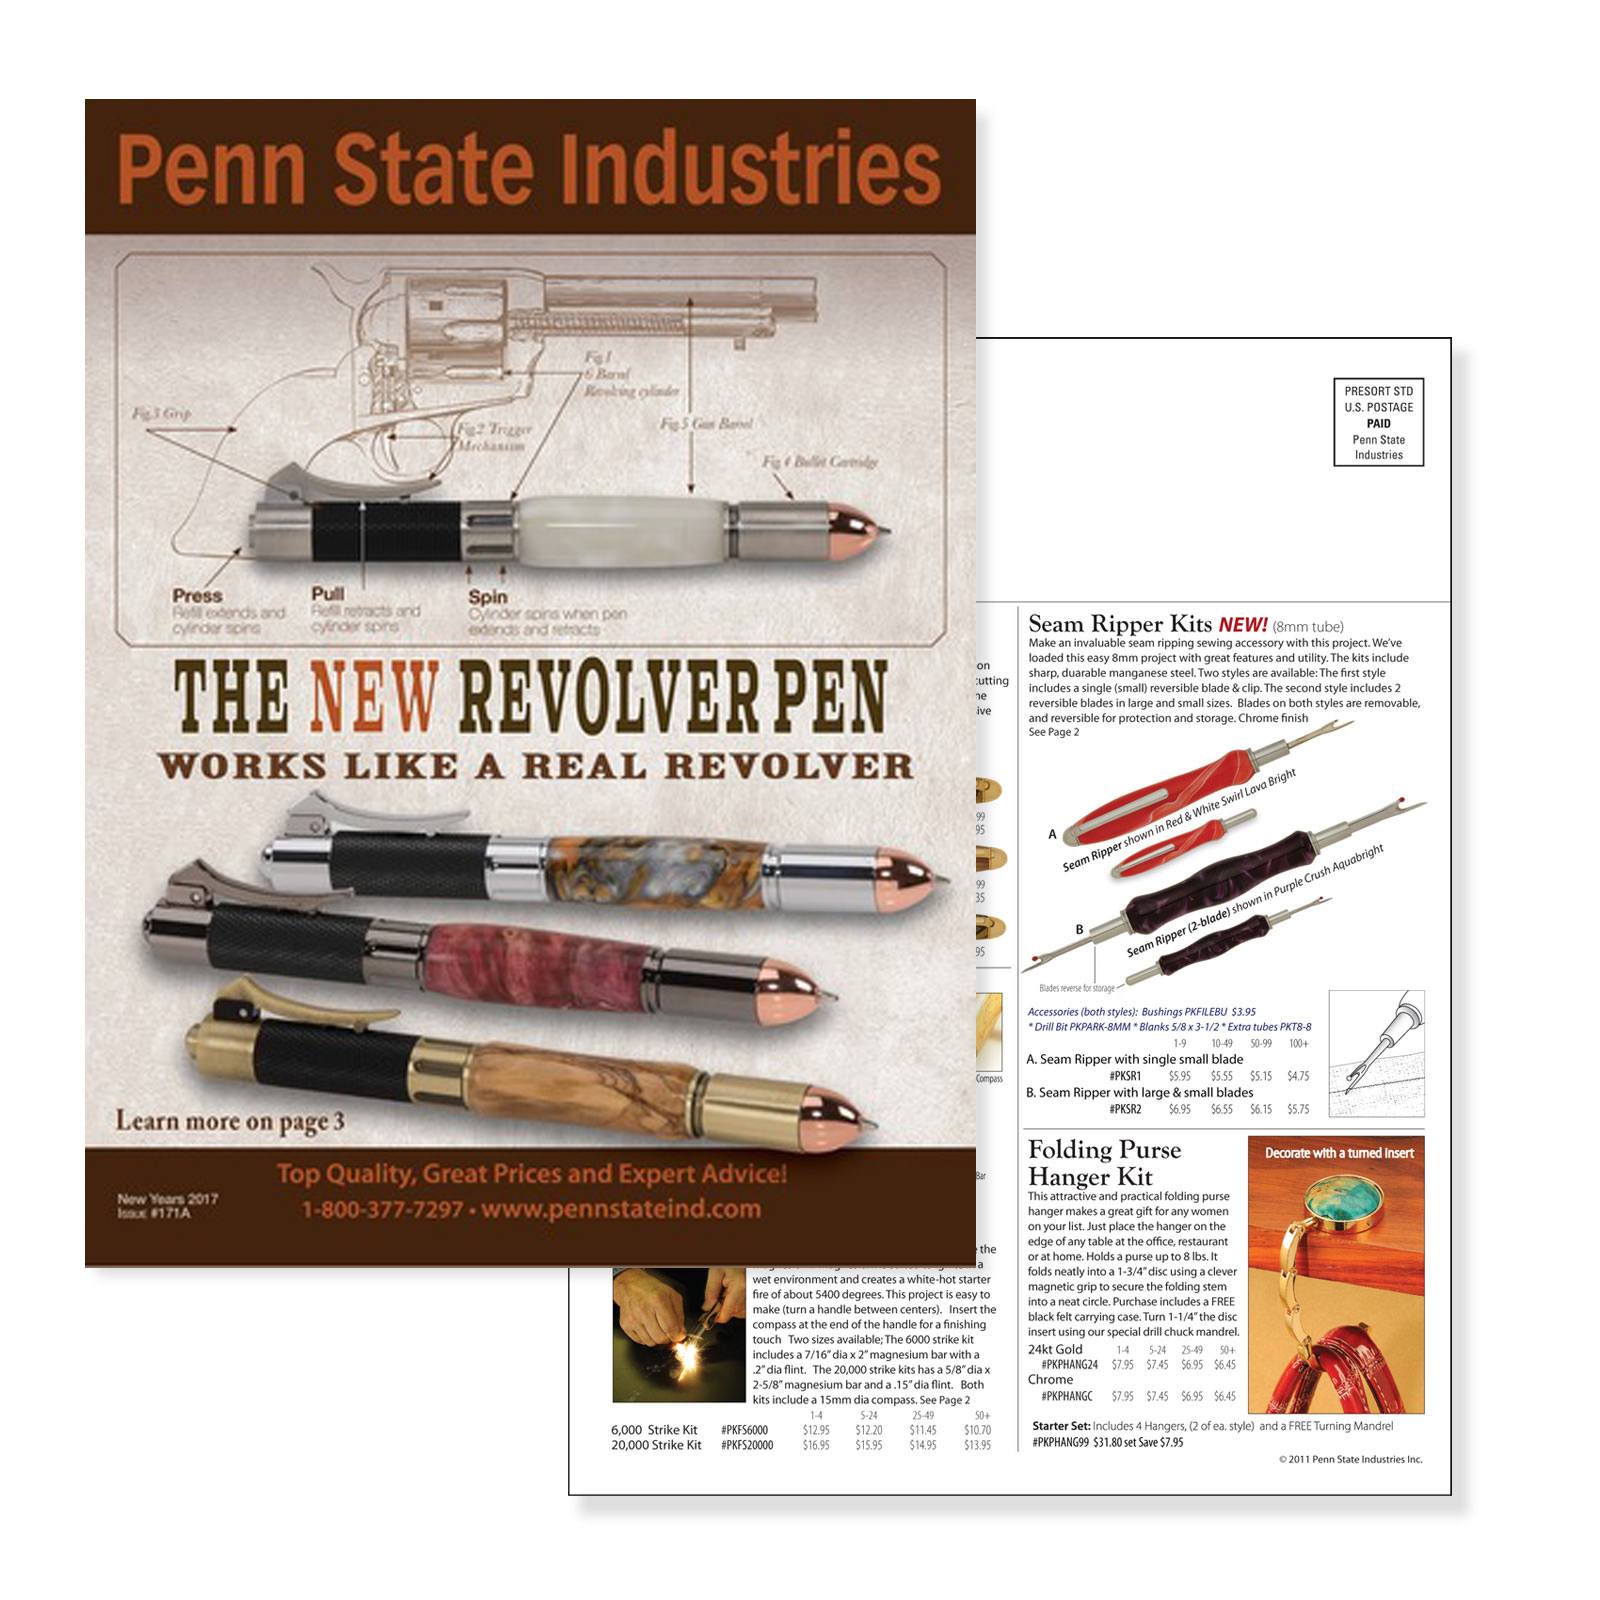 Penn State Industries (pennstateindustries) - Profile